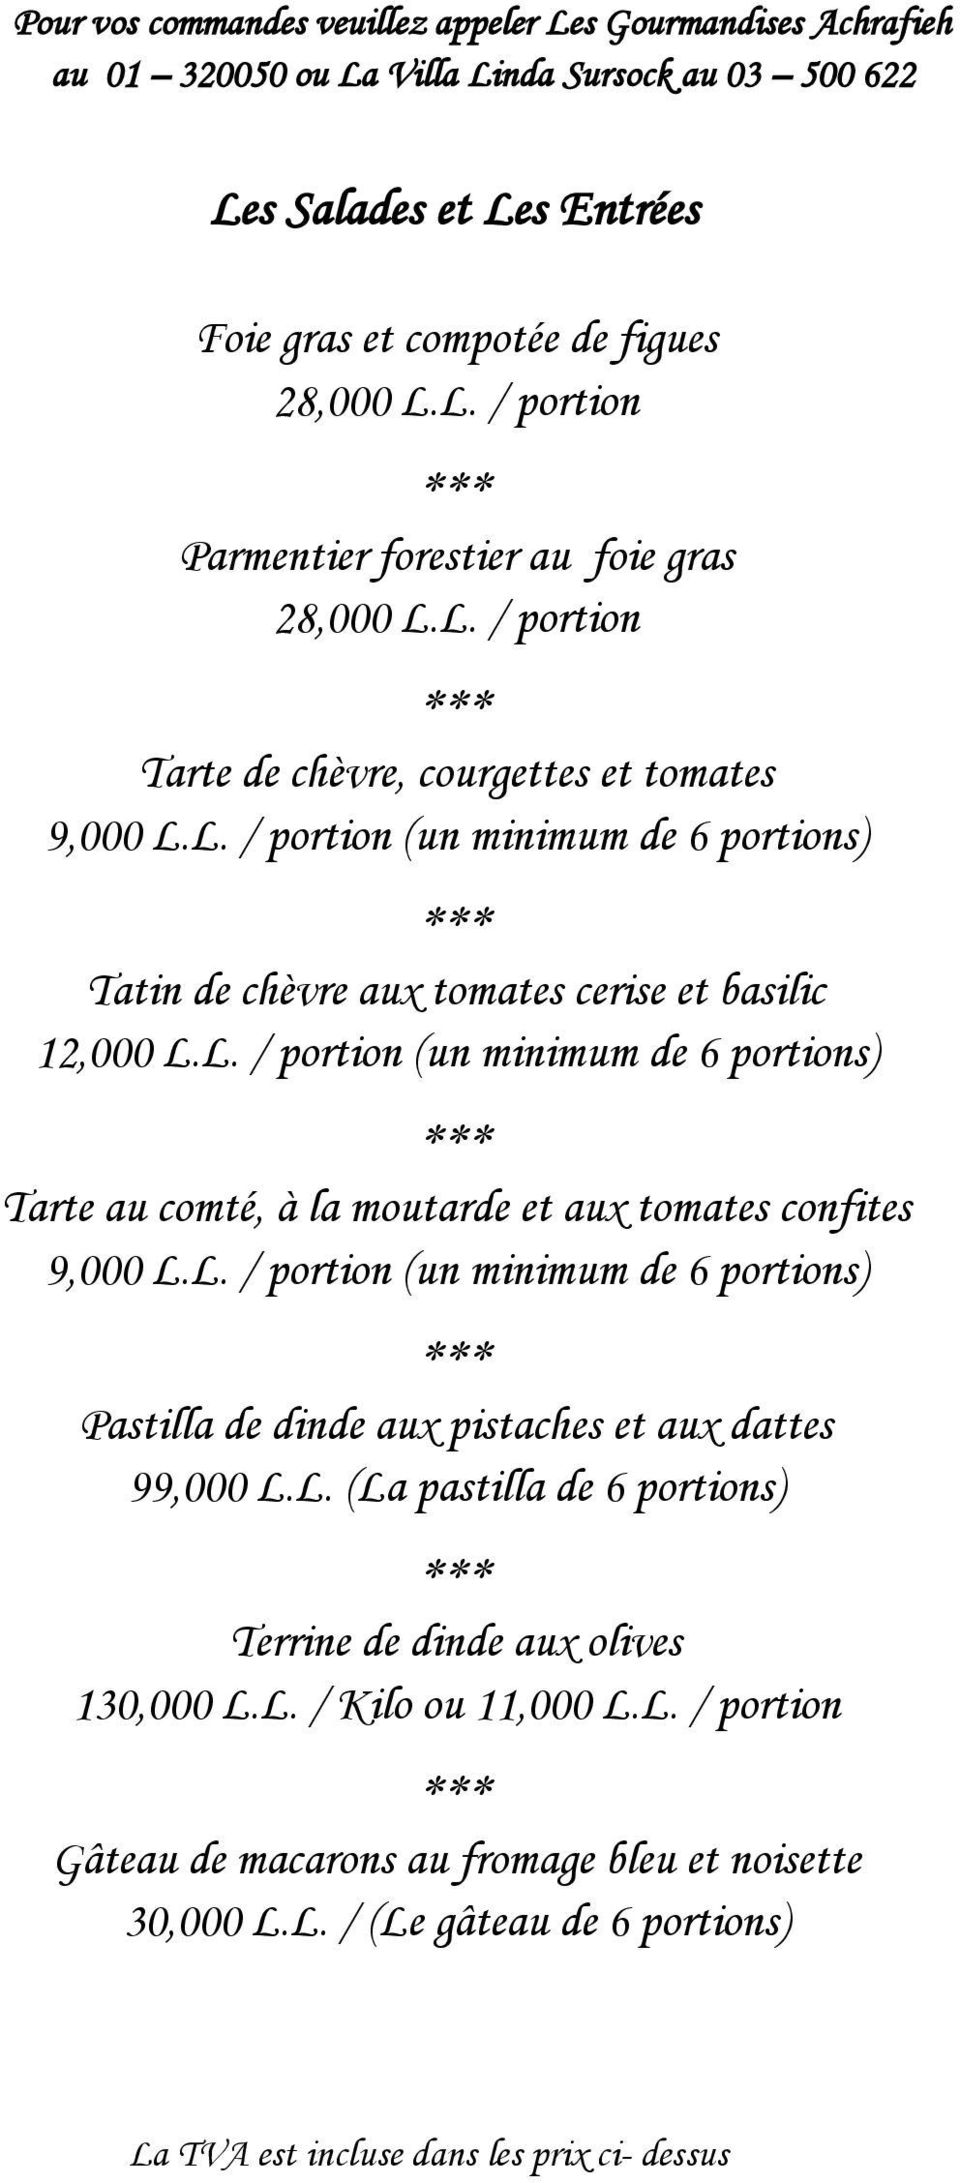 L. / portion (un minimum de 6 portions) Pastilla de dinde aux pistaches et aux dattes 99,000 L.L. (La pastilla de 6 portions) Terrine de dinde aux olives 130,000 L.L. / Kilo ou 11,000 L.